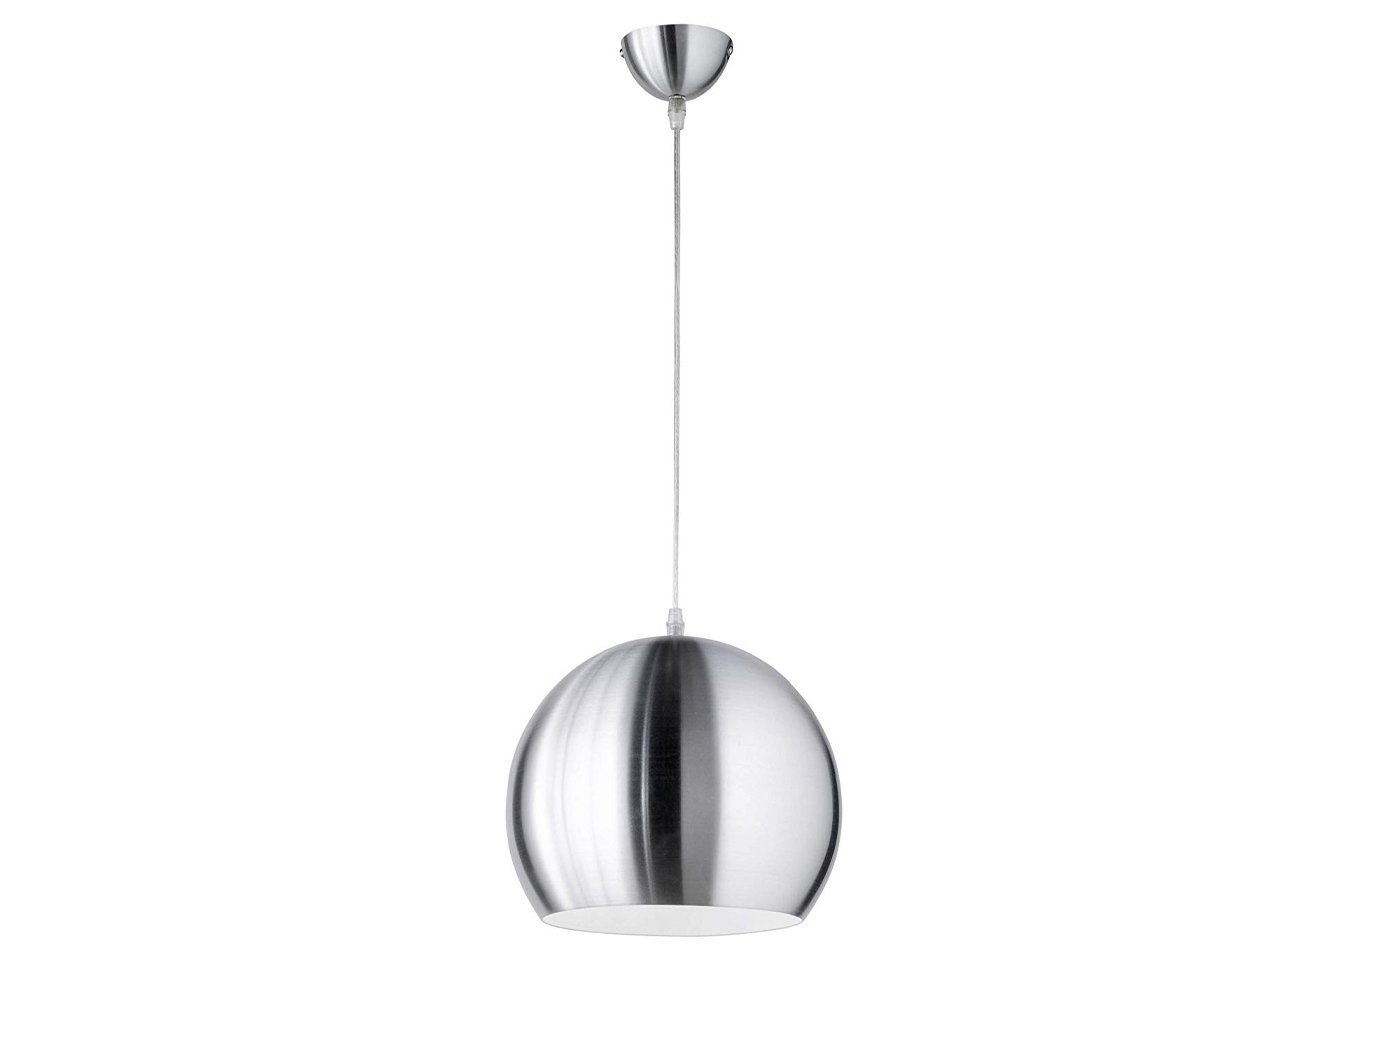 Luxus LED Pendel Decken Hänge Lampe Glas Wohn Ess Zimmer Beleuchtung silber weiß 